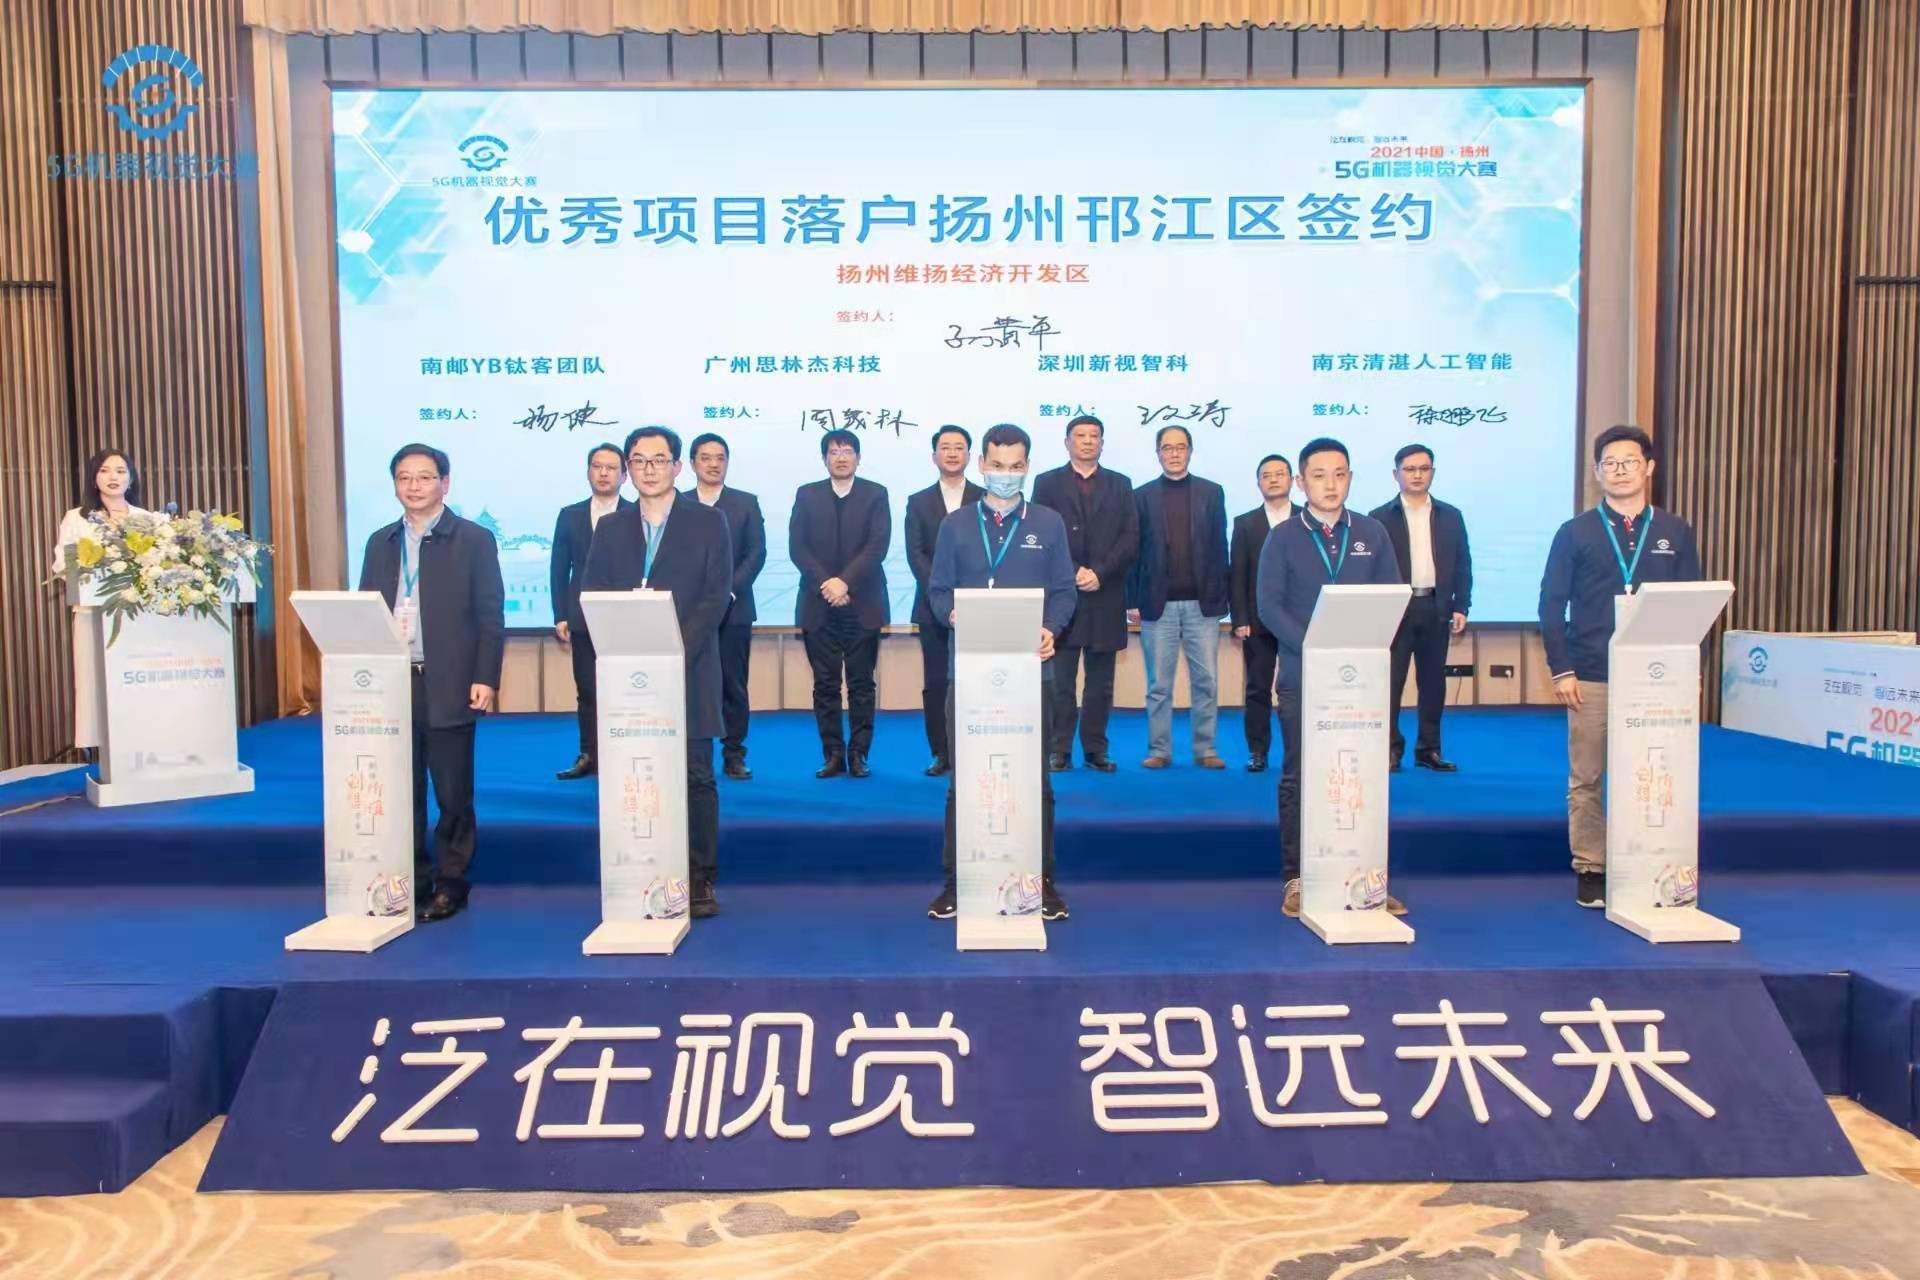 张新钢|2021中国·扬州5G机器视觉大赛决赛暨颁奖典礼成功举办